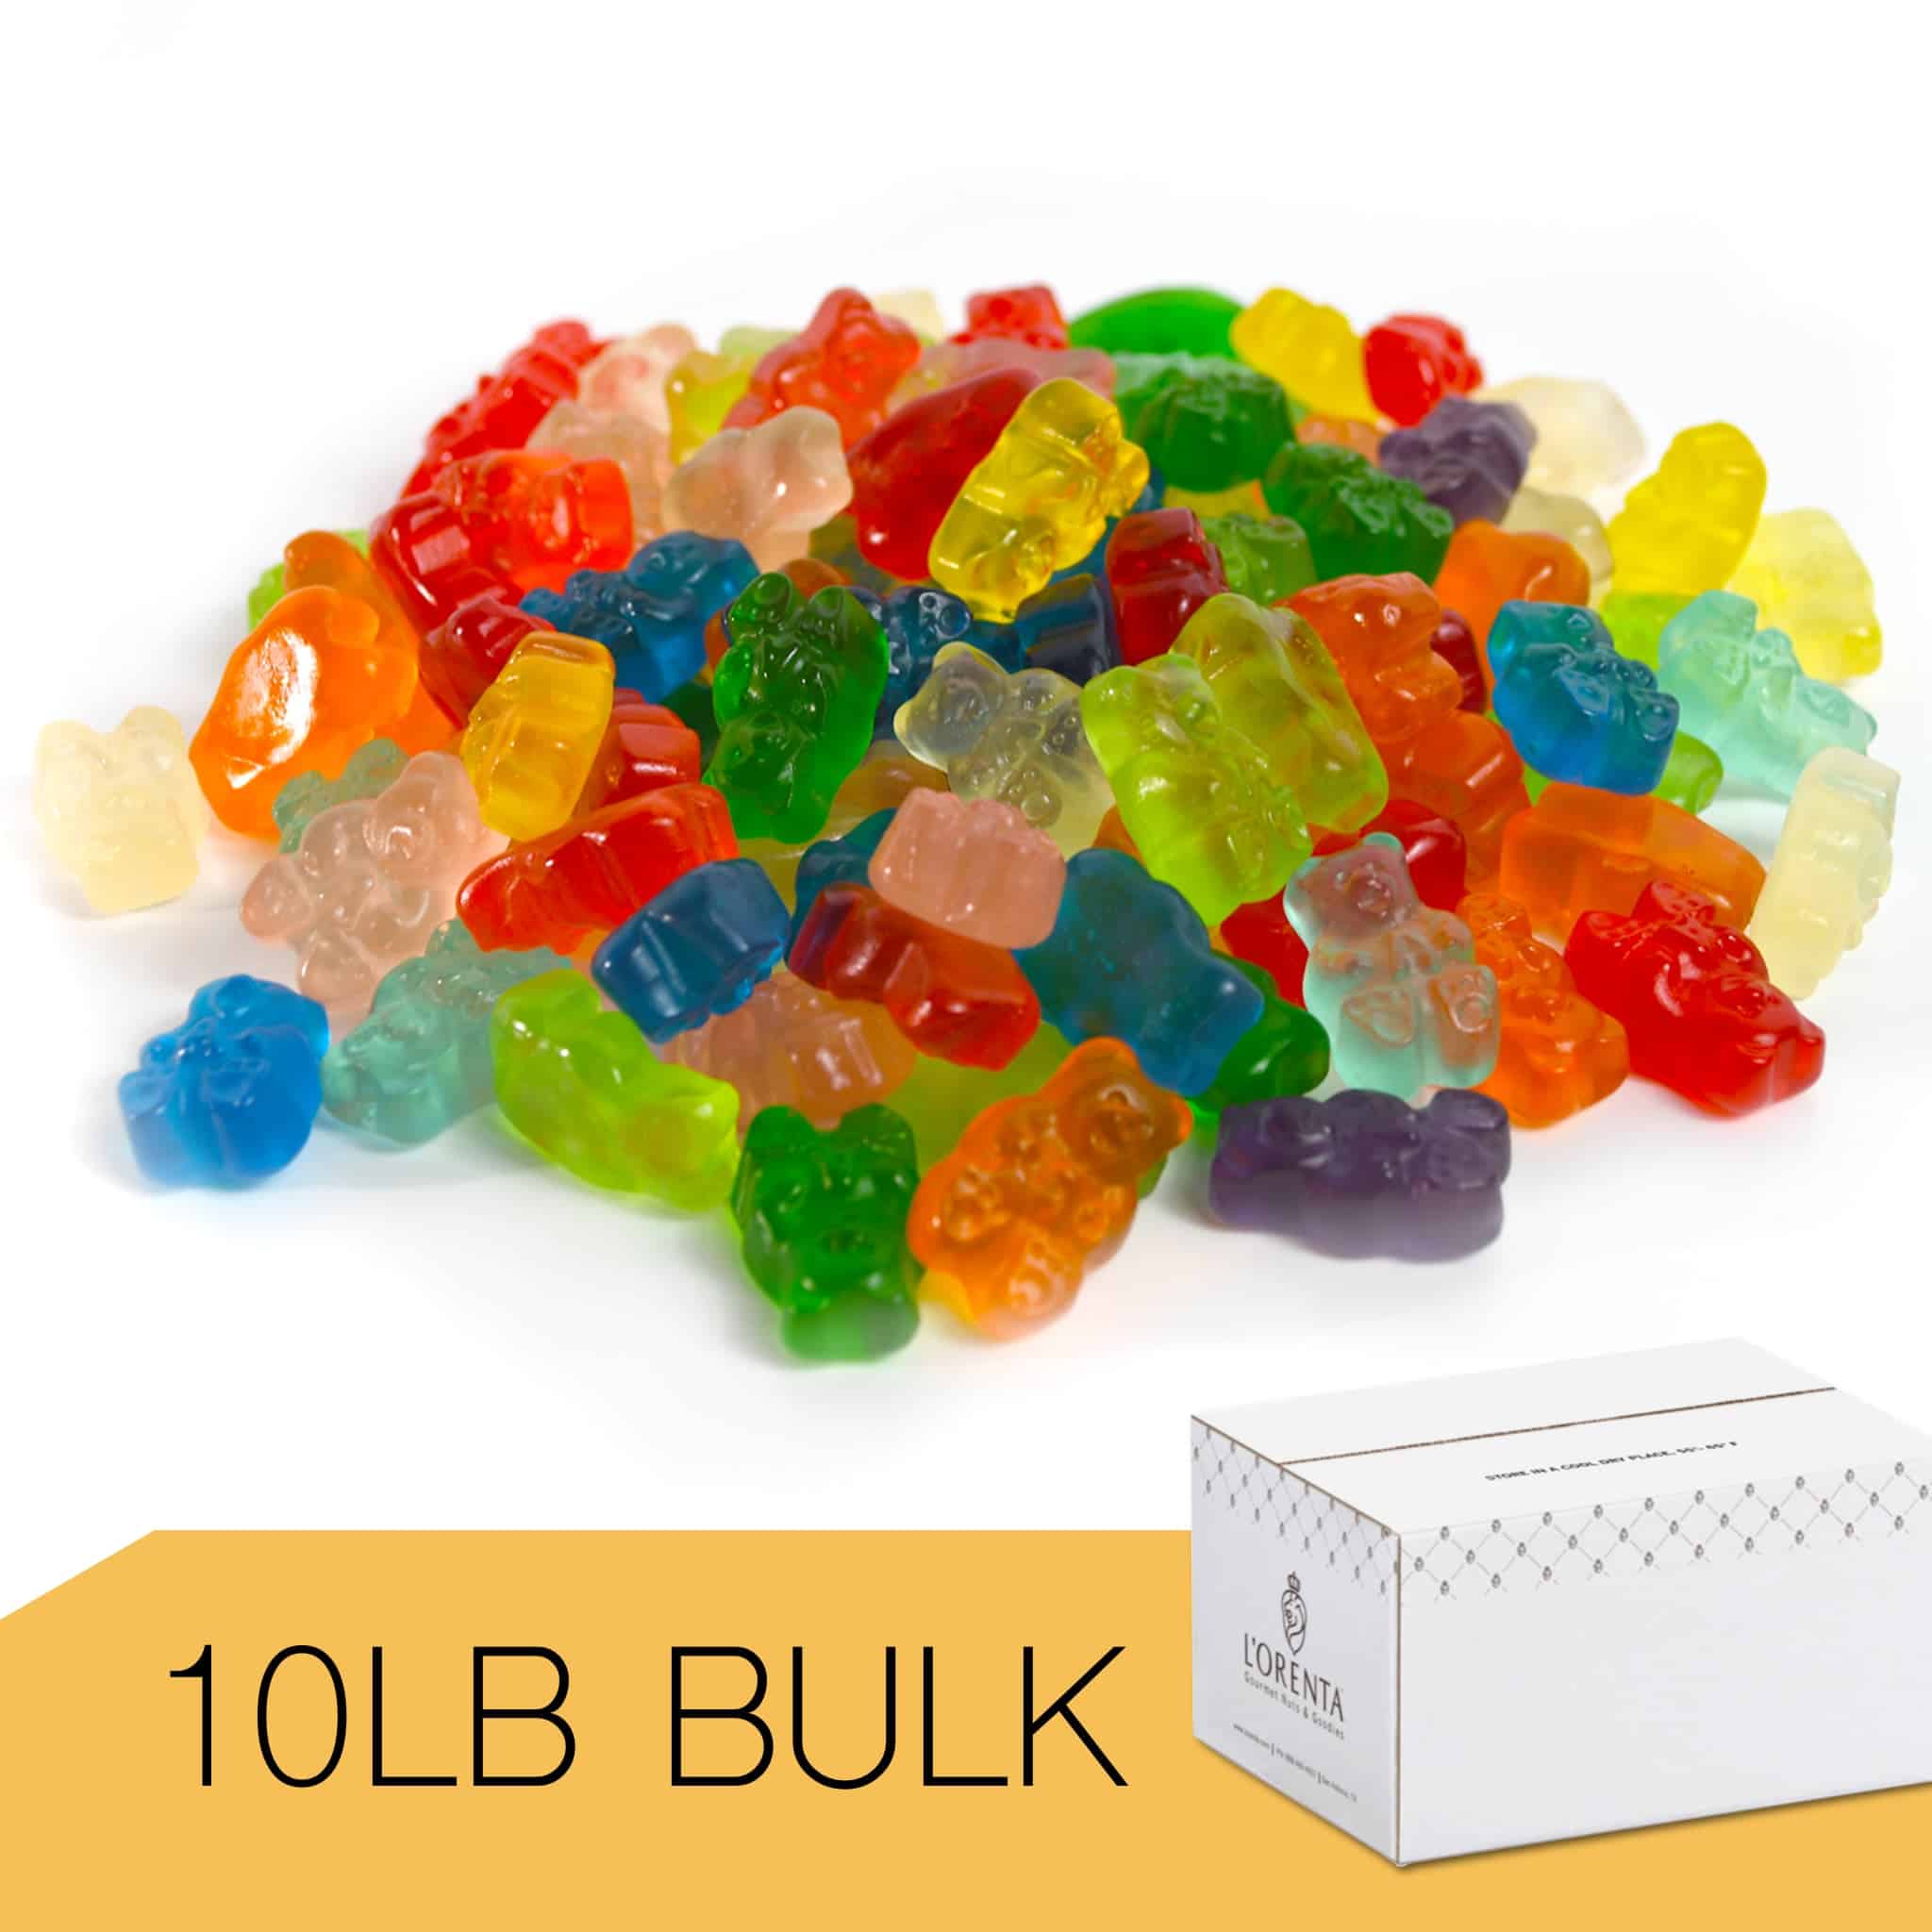 CANDY - 12 Flavor Gummi Bears